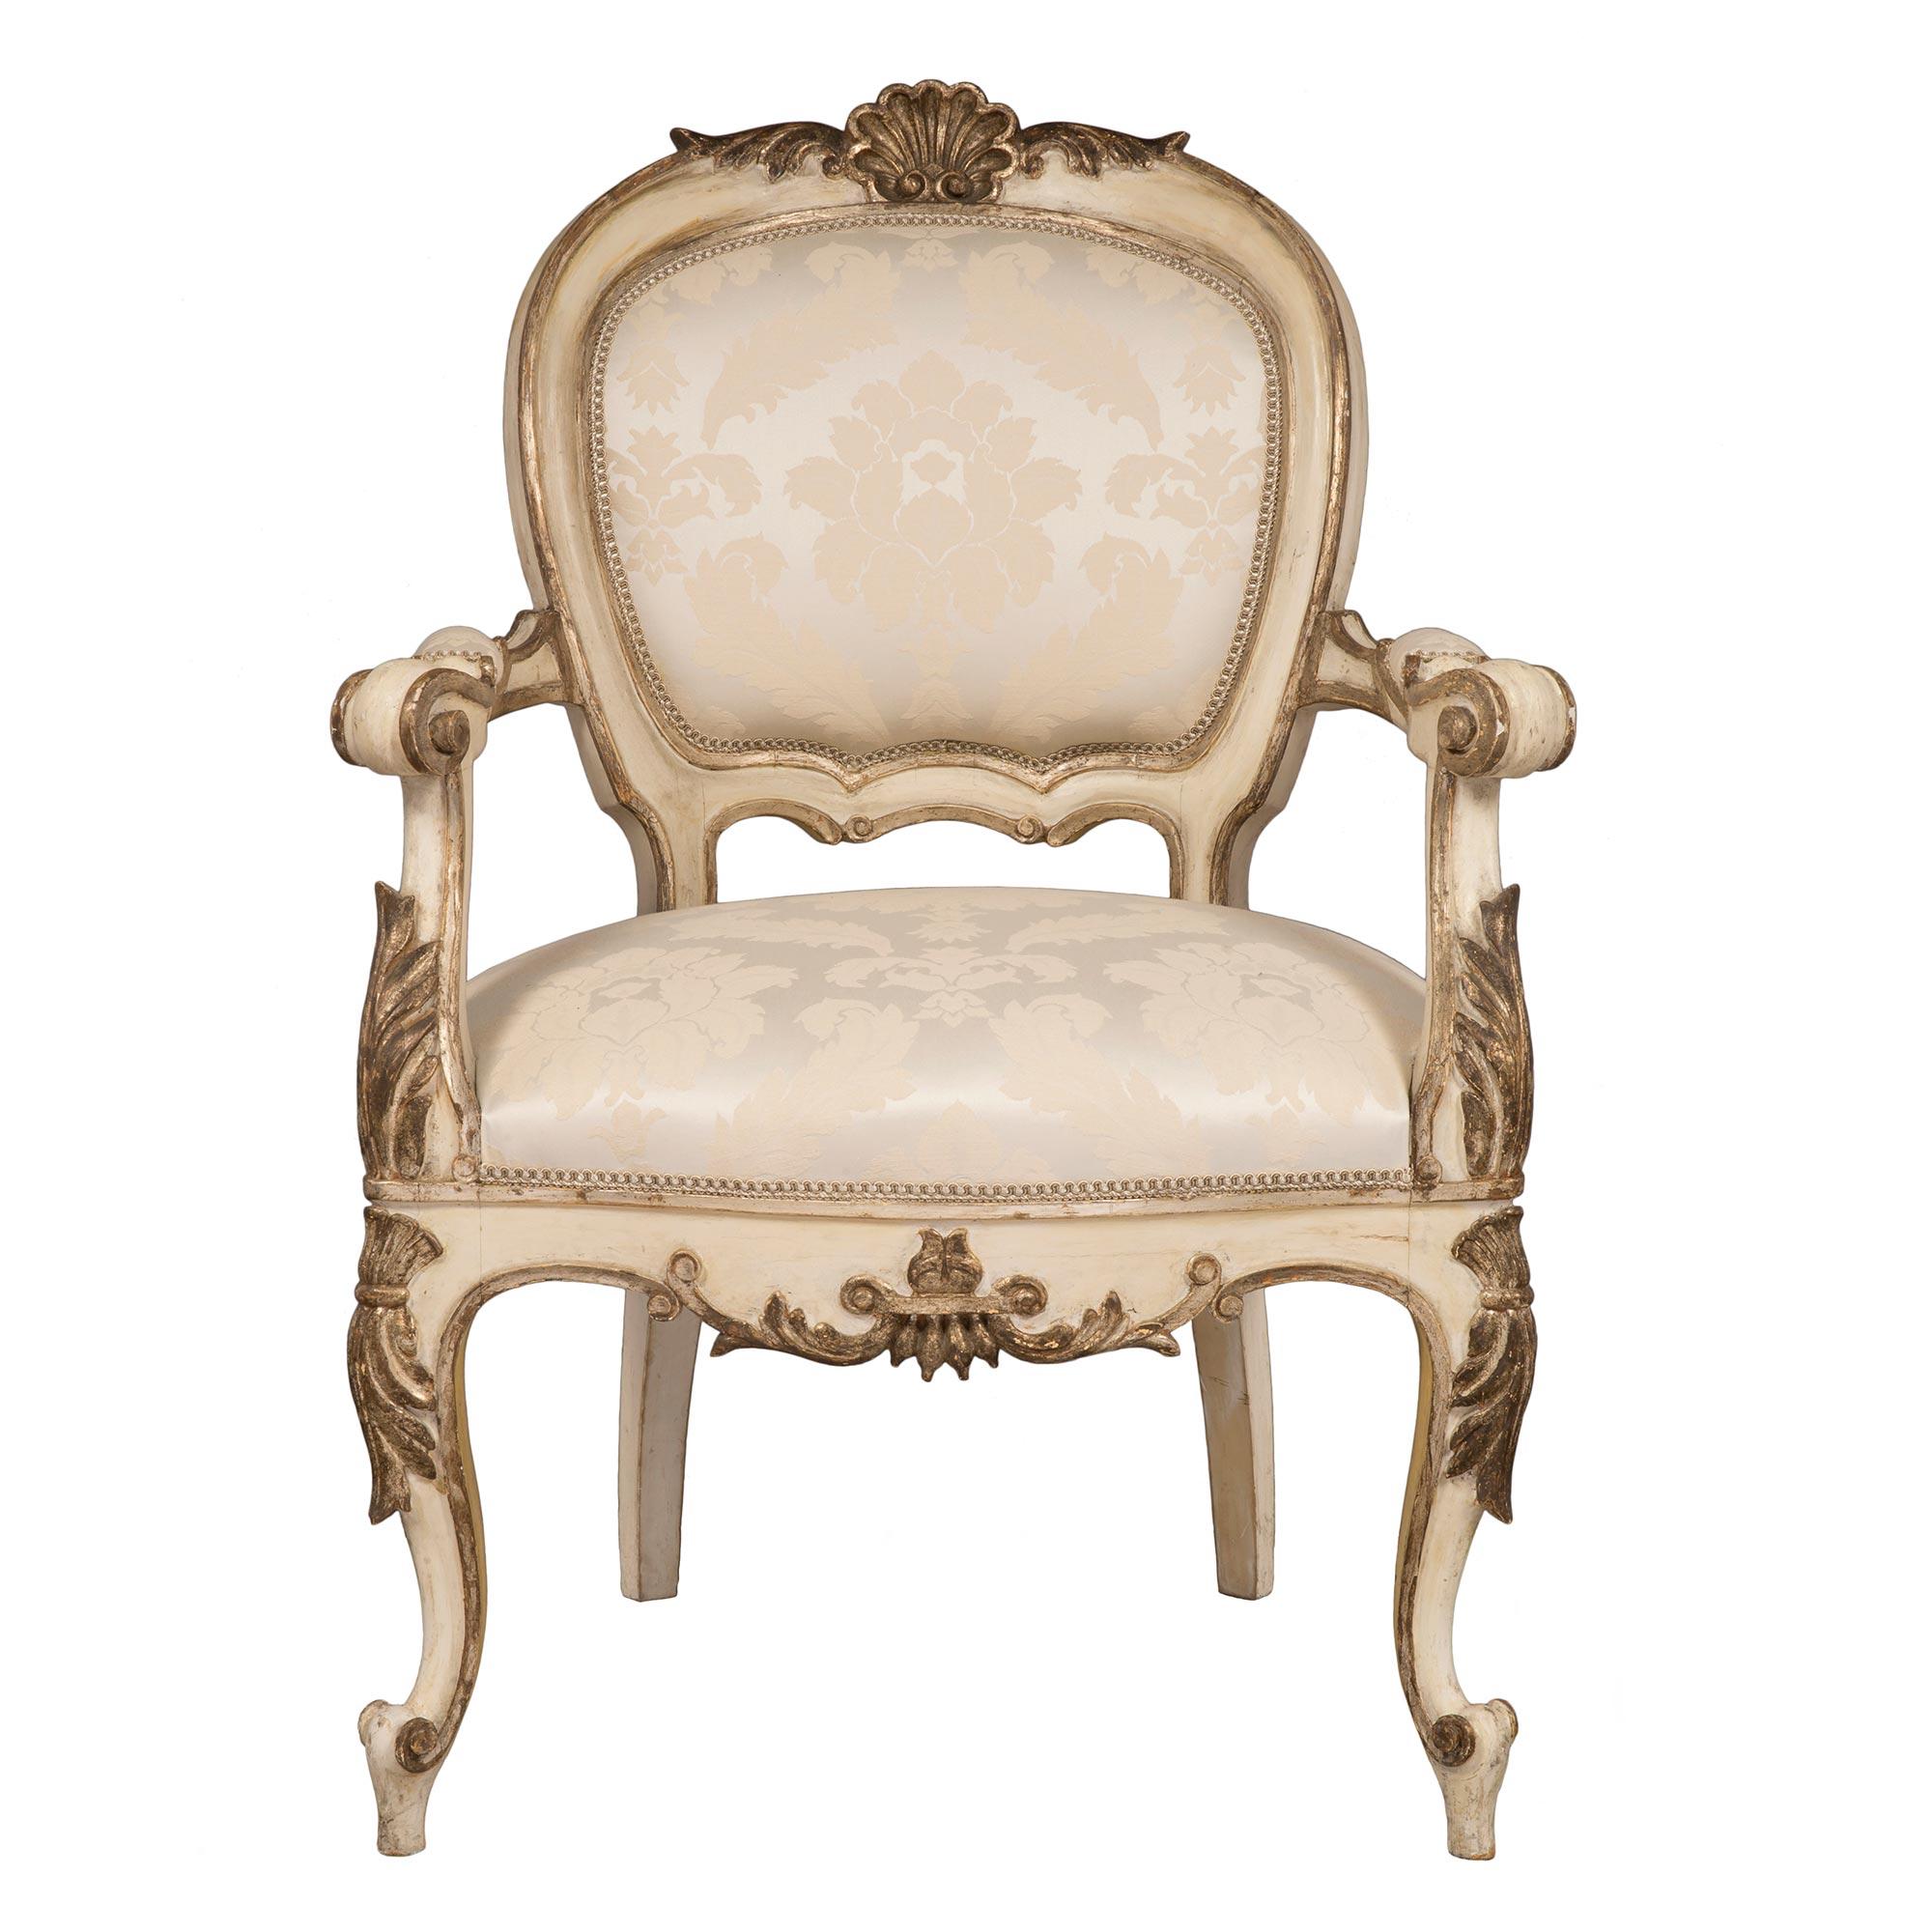 Un très attrayant ensemble de quatre fauteuils italiens du début du 19ème siècle de style Louis XV patiné blanc cassé et Mecque. Chaque chaise est surélevée par des pieds cabriole à volutes en 